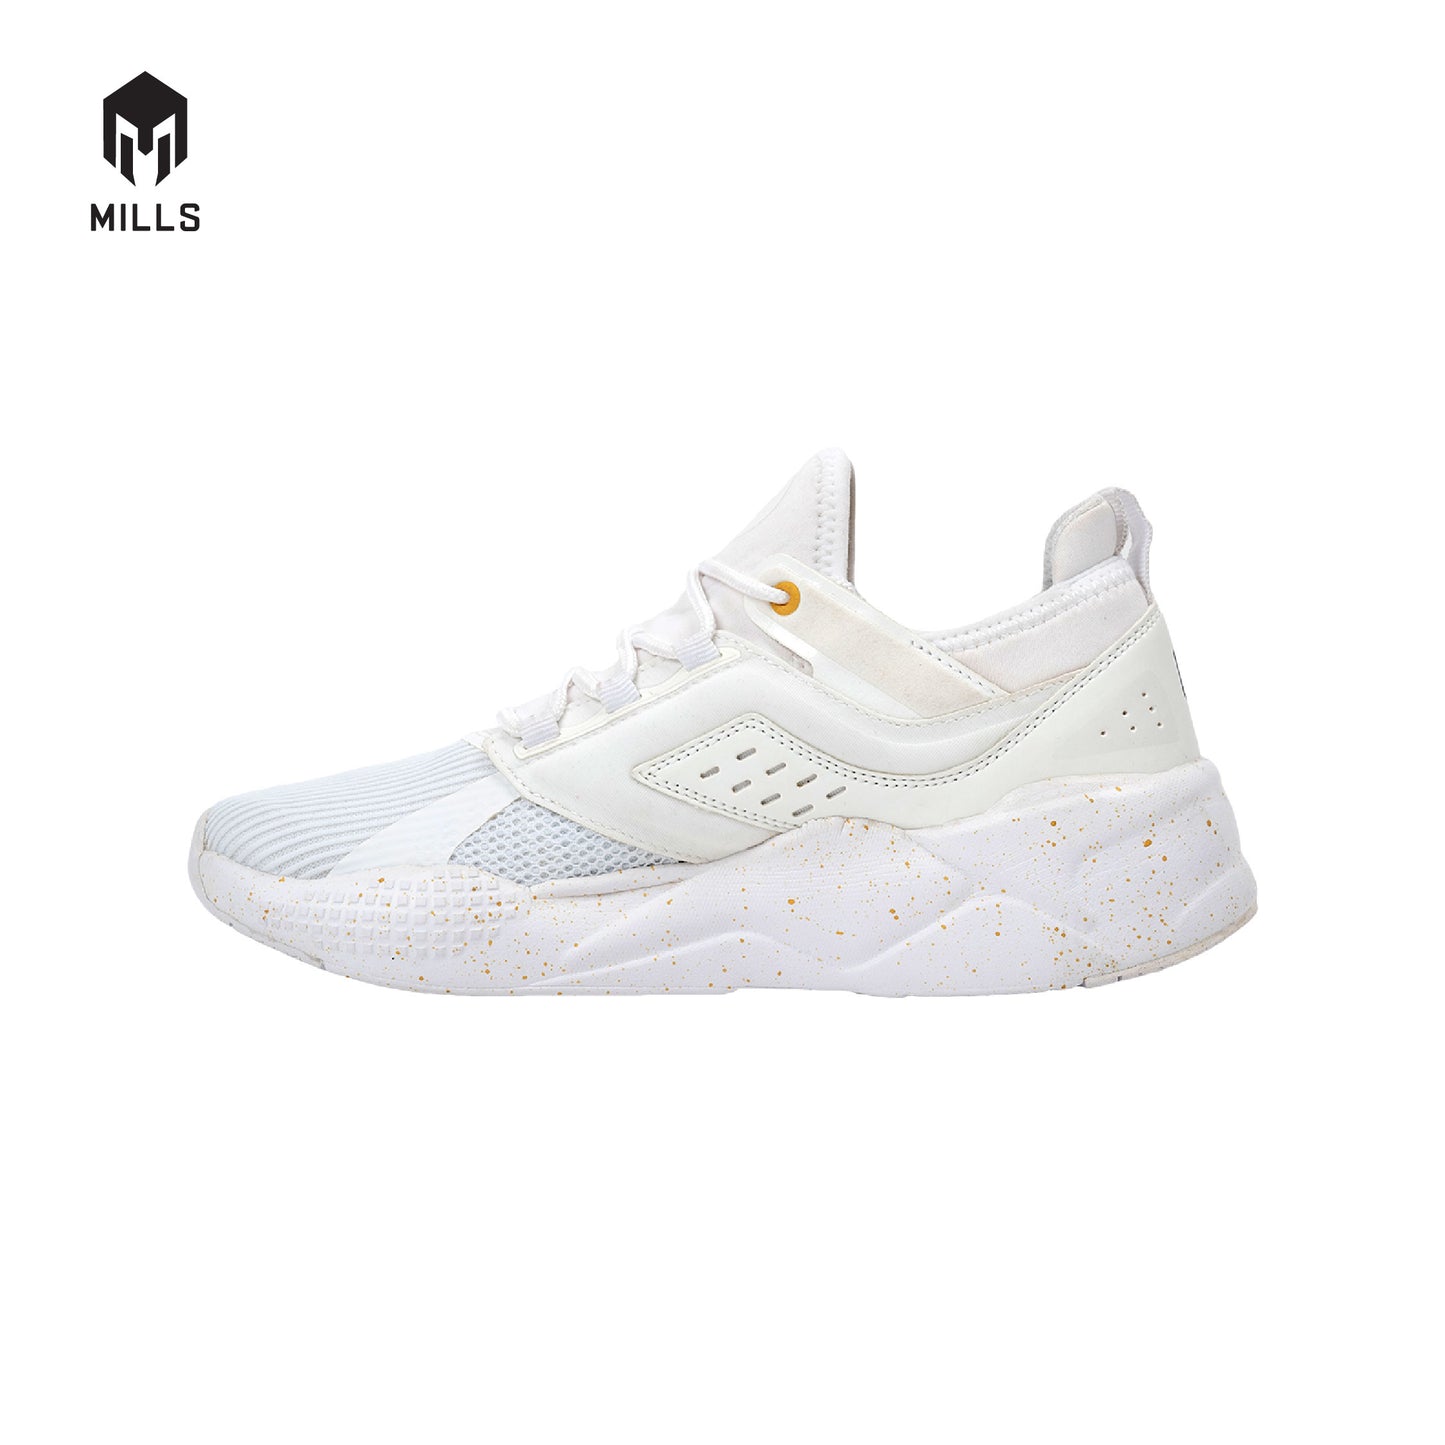 MILLS Sepatu Revolt Beta White / White 9700903